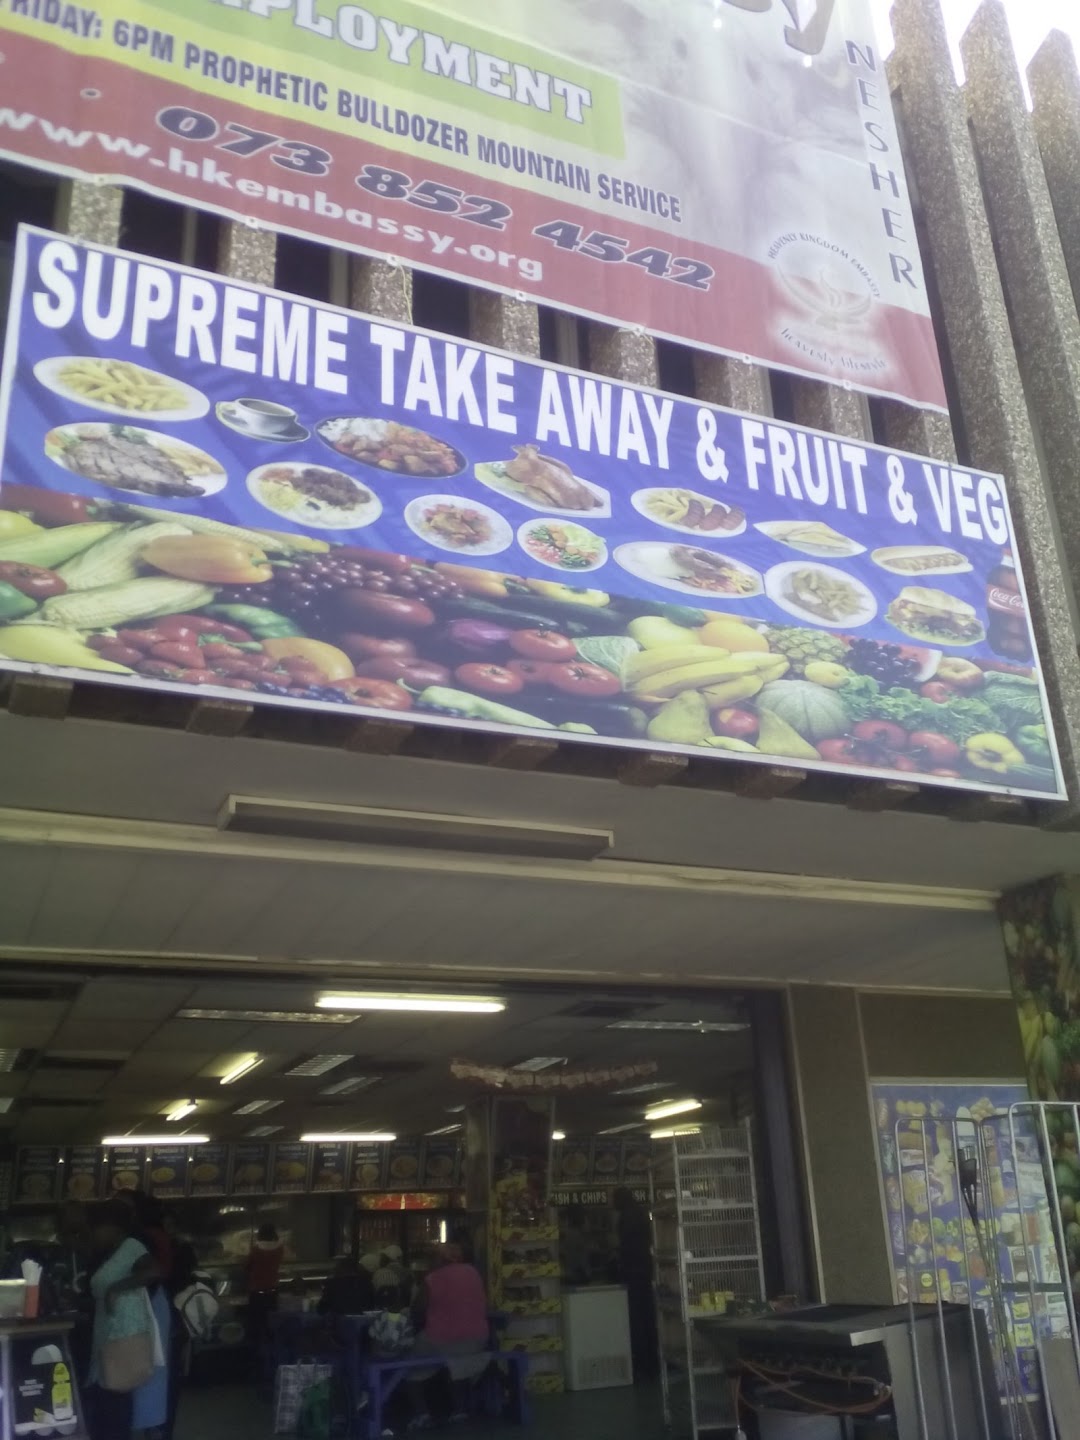 Supreme Take Away & Fruit & Veg